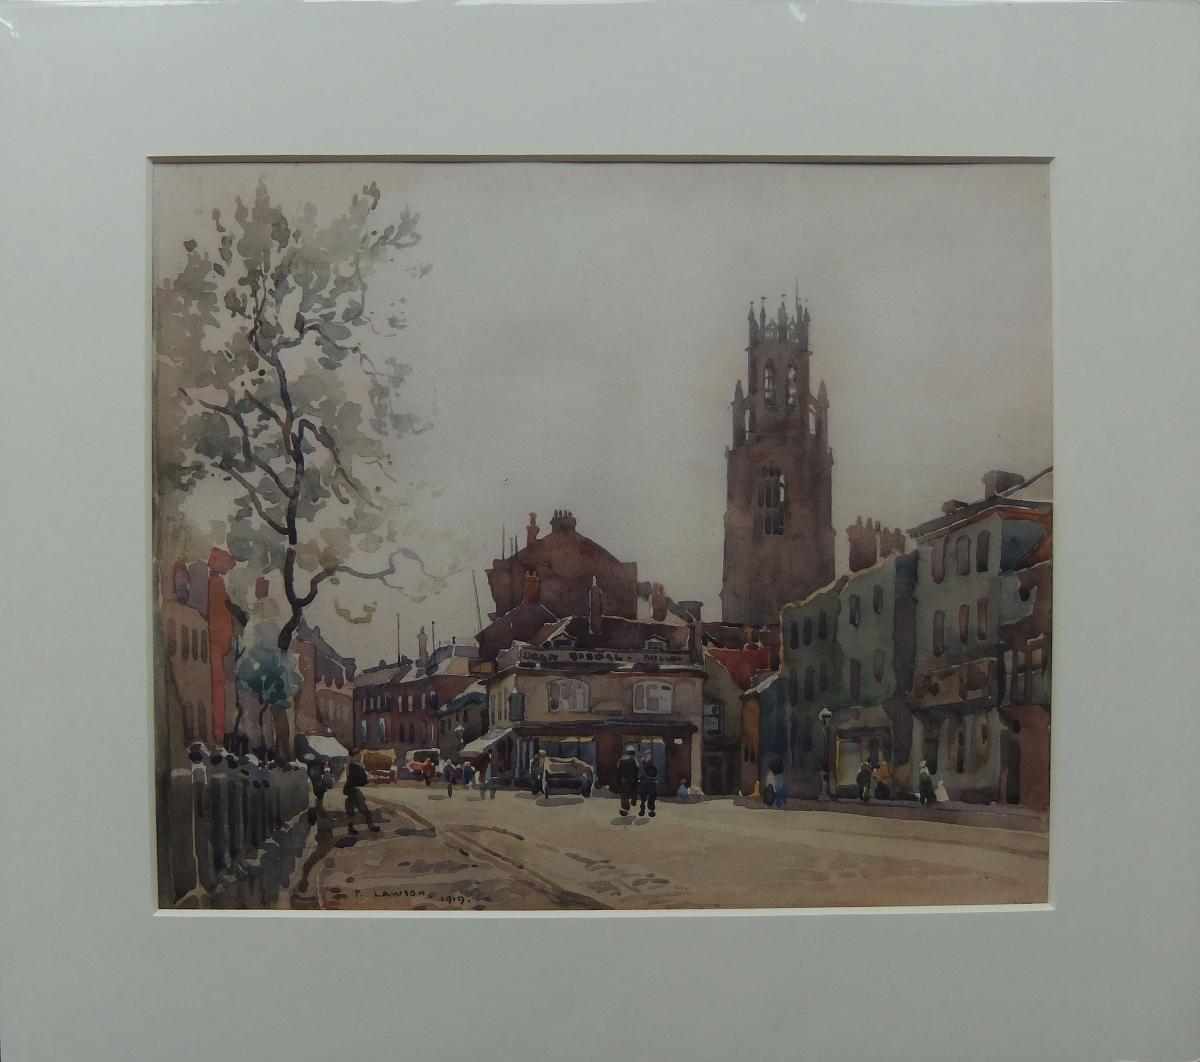 Fred Lawson "Boston, Lincolnshire" watercolour